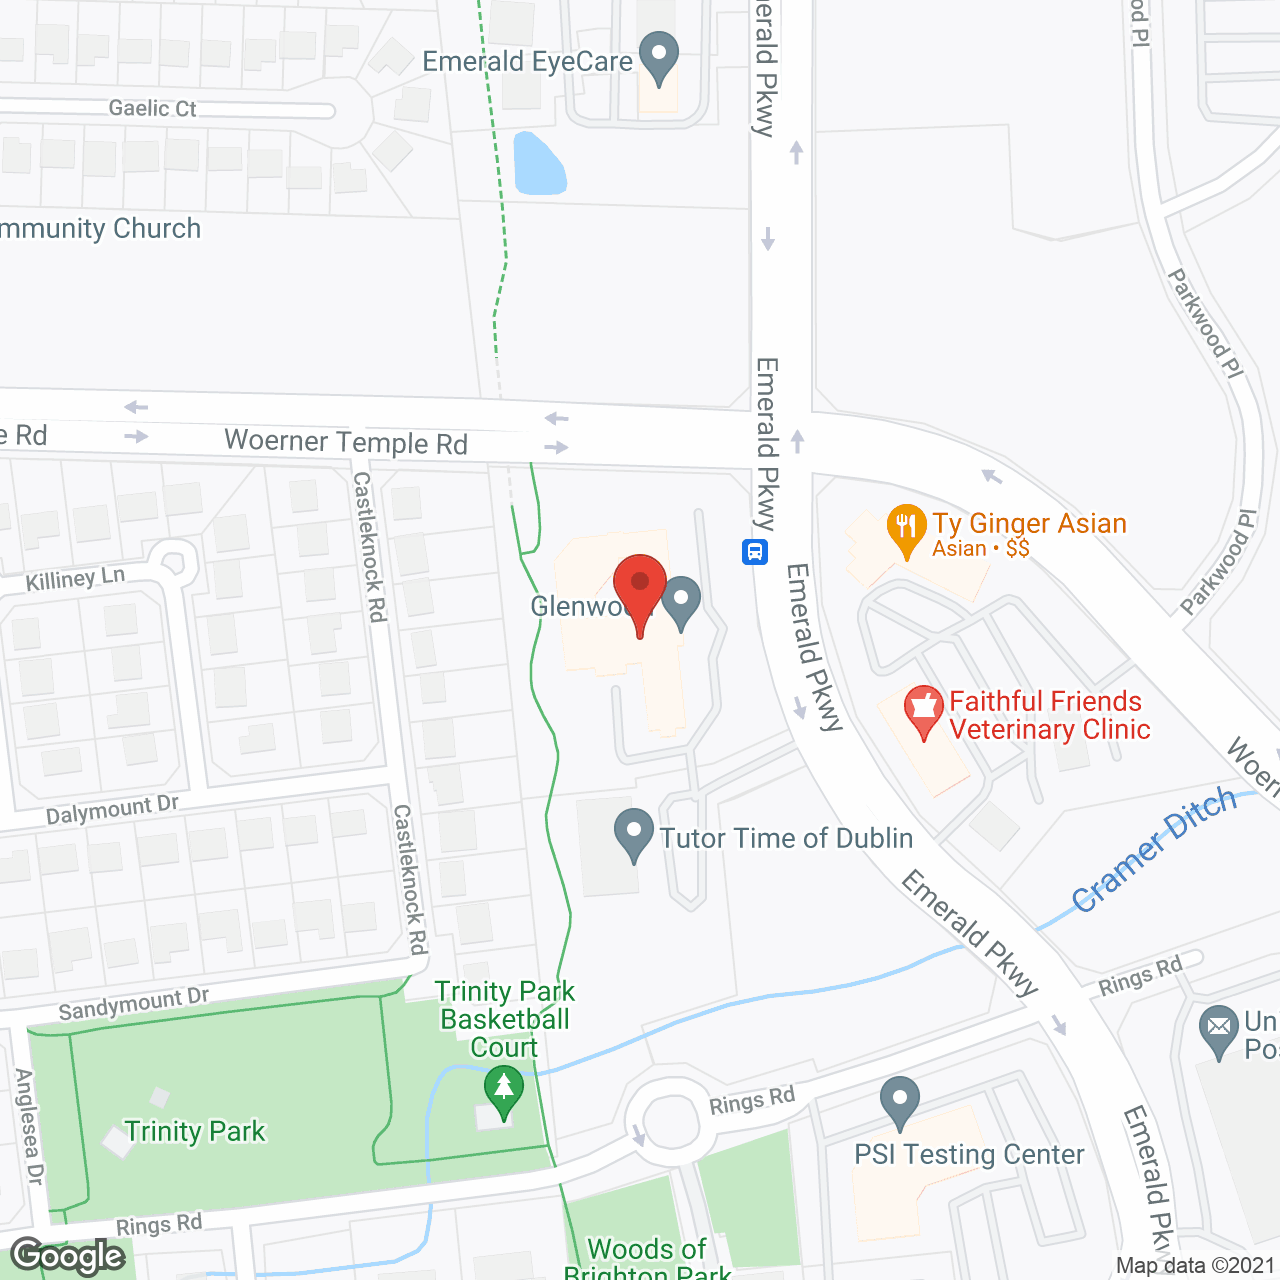 Glenwood in google map